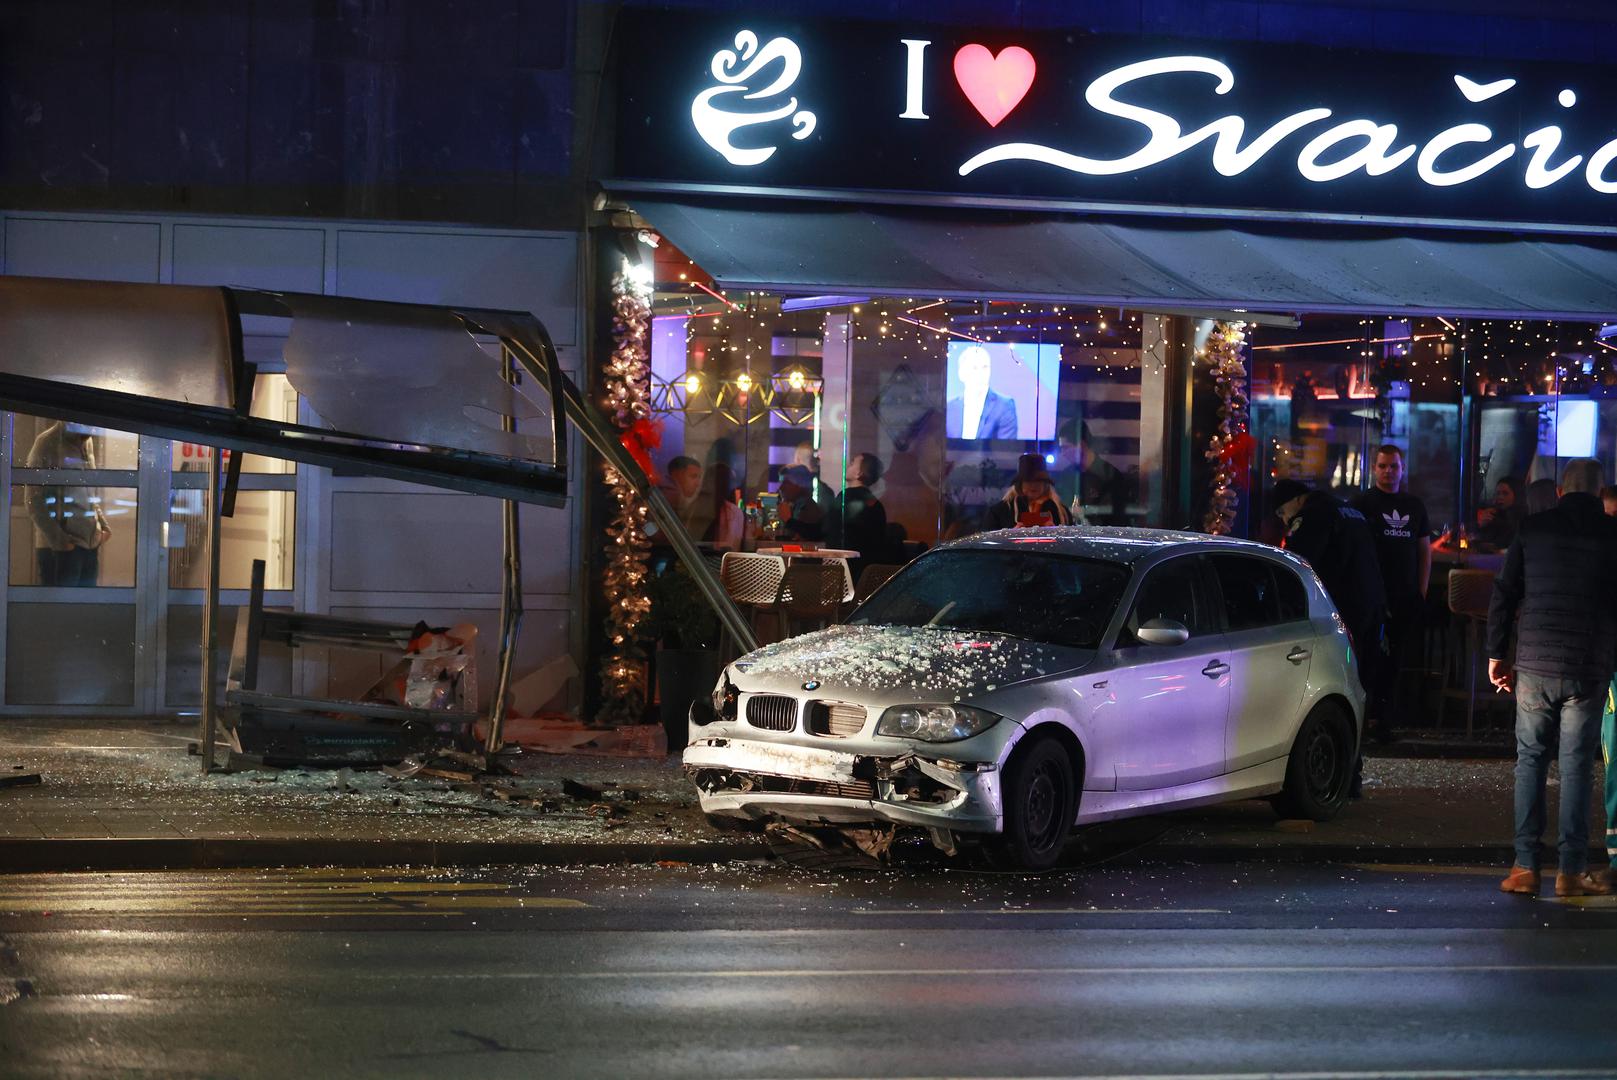 27.01.2023., Osijek - Prometna nesreca u kojoj je vozac osobnog automolila izgubio kontrolu nad vozilom i zabio se u autobusnu stanicu. Photo: Davor Javorovic/PIXSELL